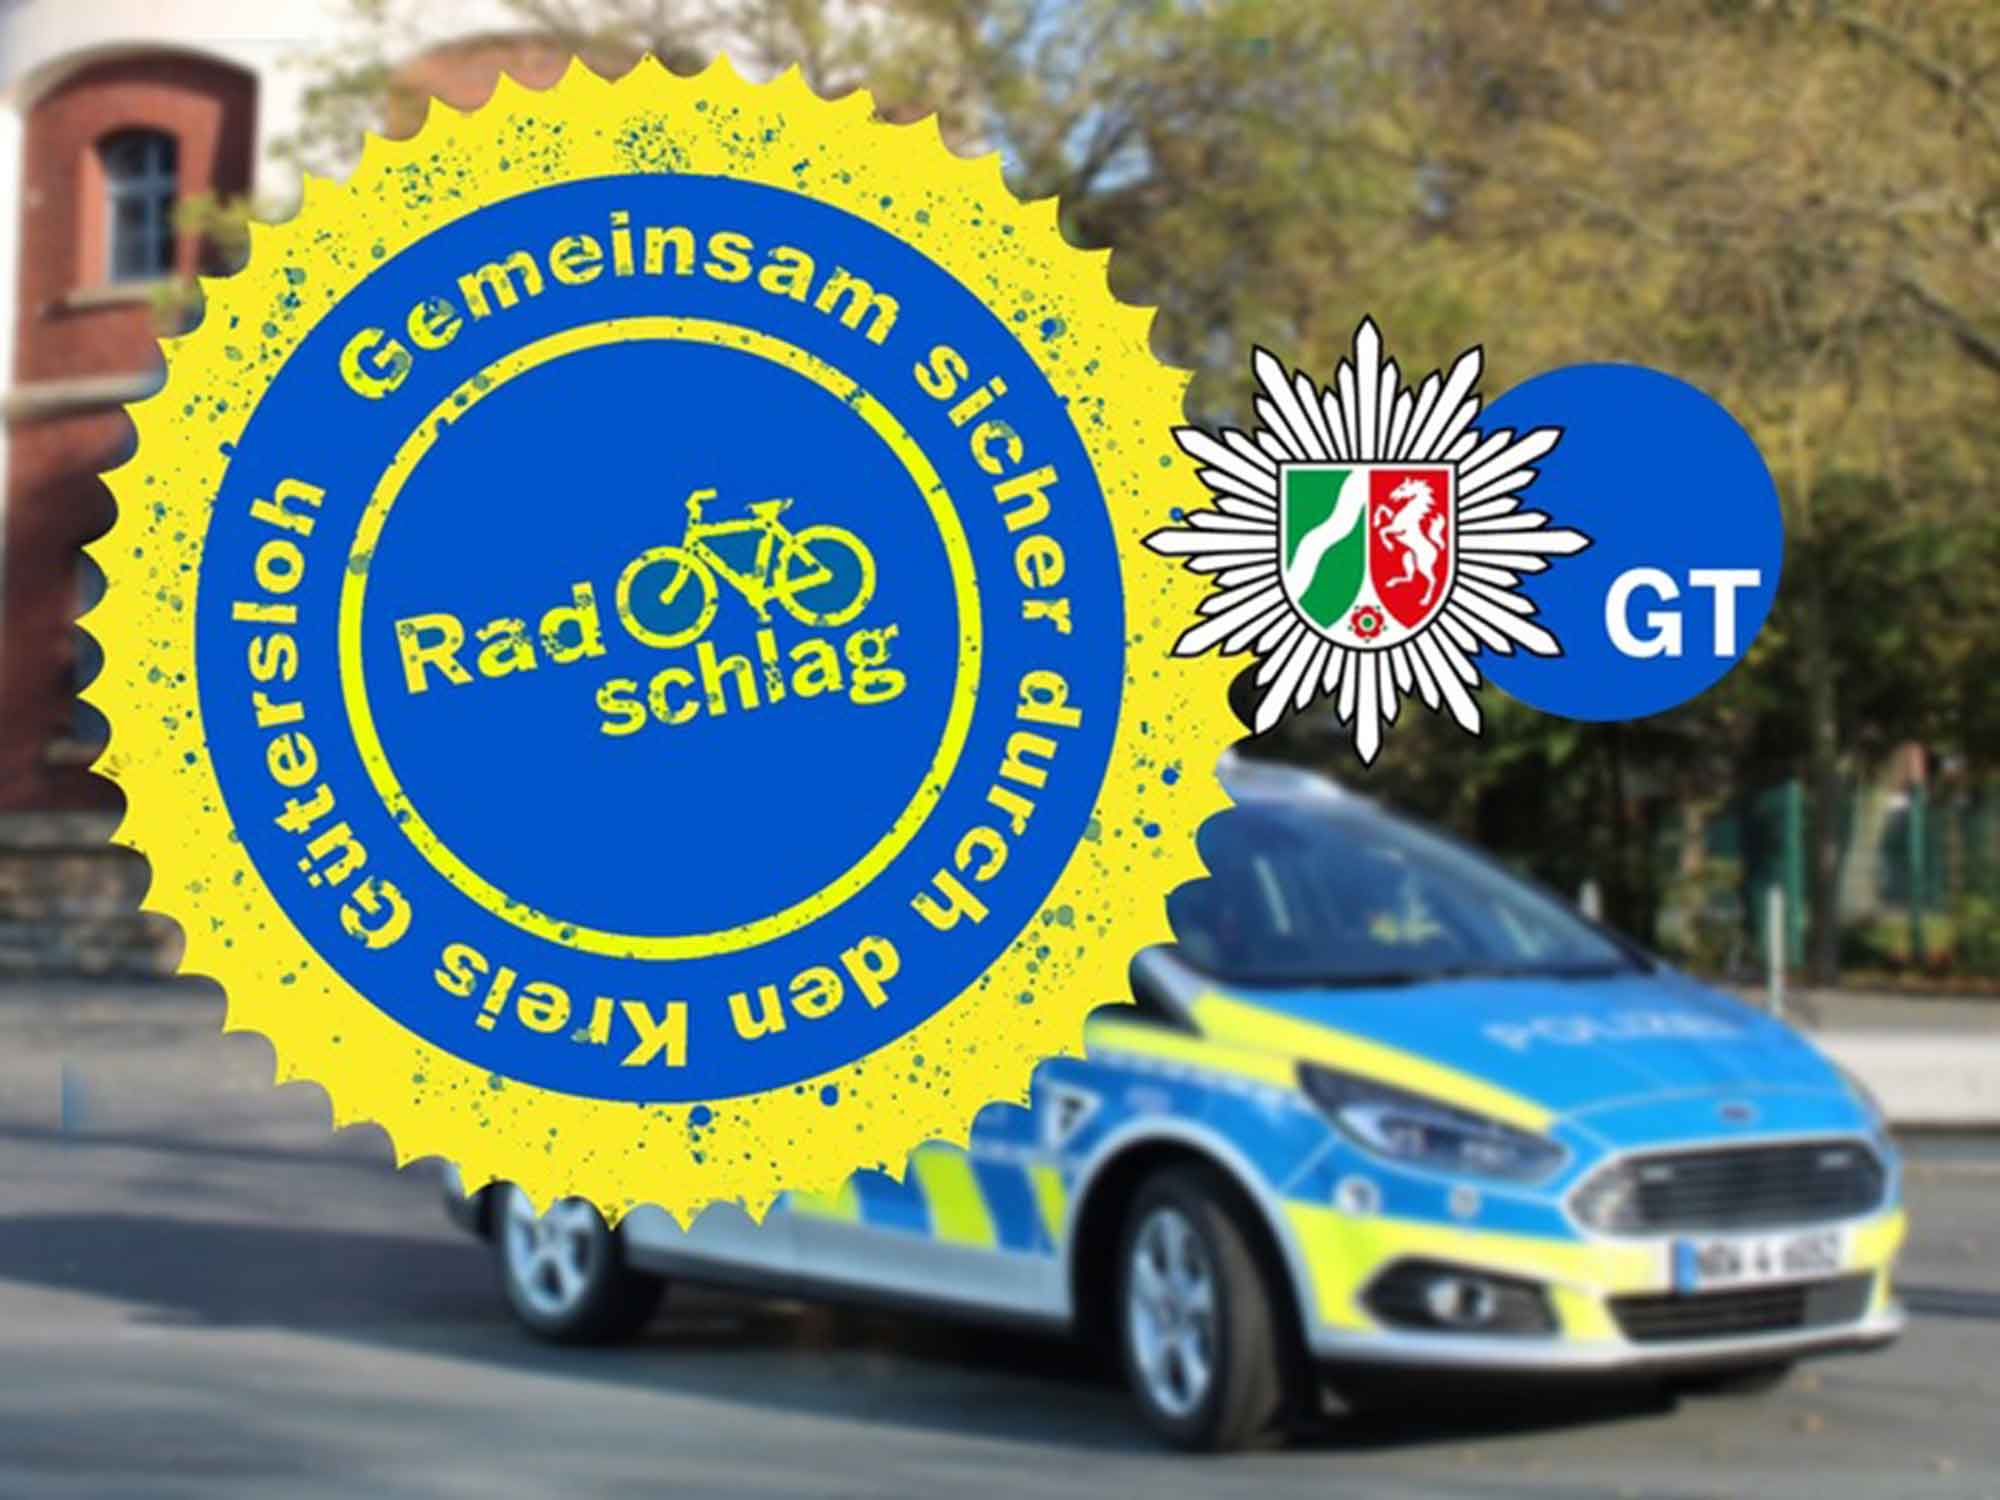 Polizei Gütersloh: Aktion Radschlag – Polizei interviewt Radfahrer in der Innenstadt